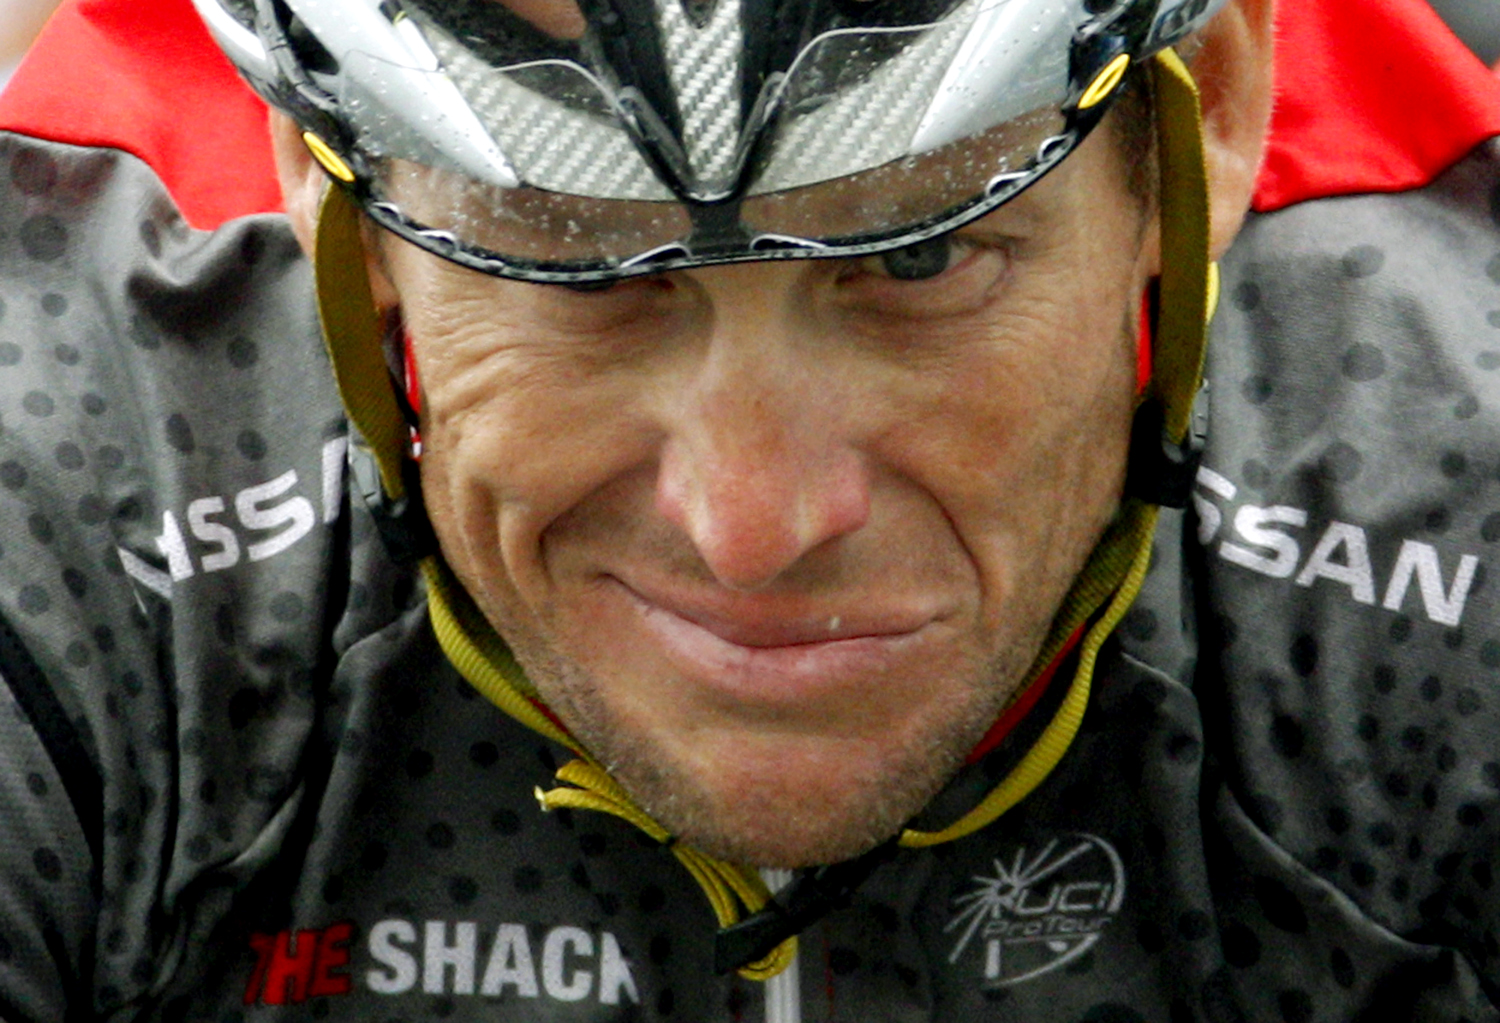 Lance Armstrong a svájci körversenyen 2010-ben - évekkel korábban itt kaphatták volna el egy doppingteszten